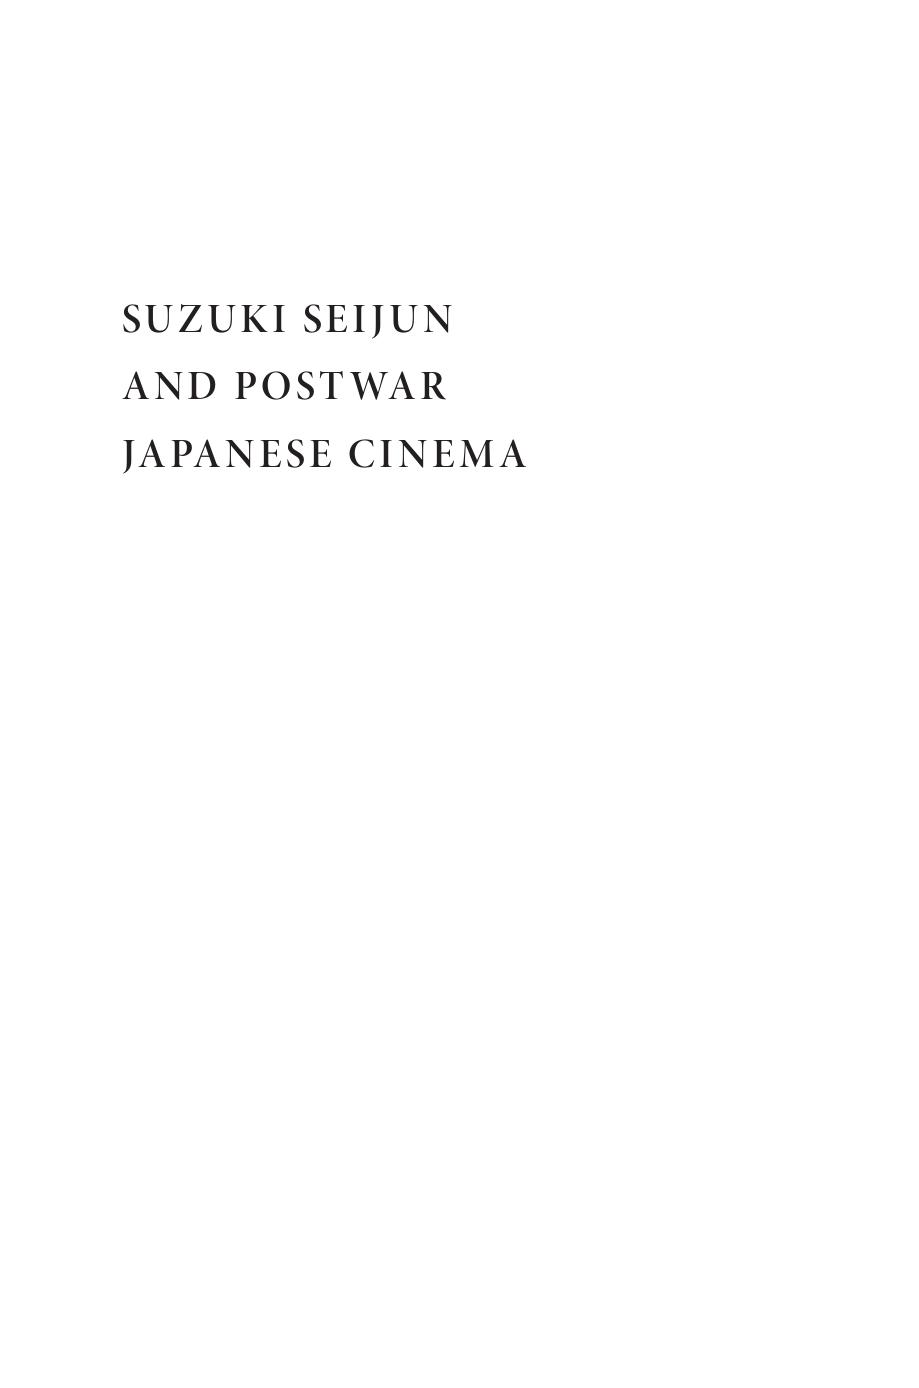 Suzuki Seijun and Postwar Japanese Cinema by William Carroll